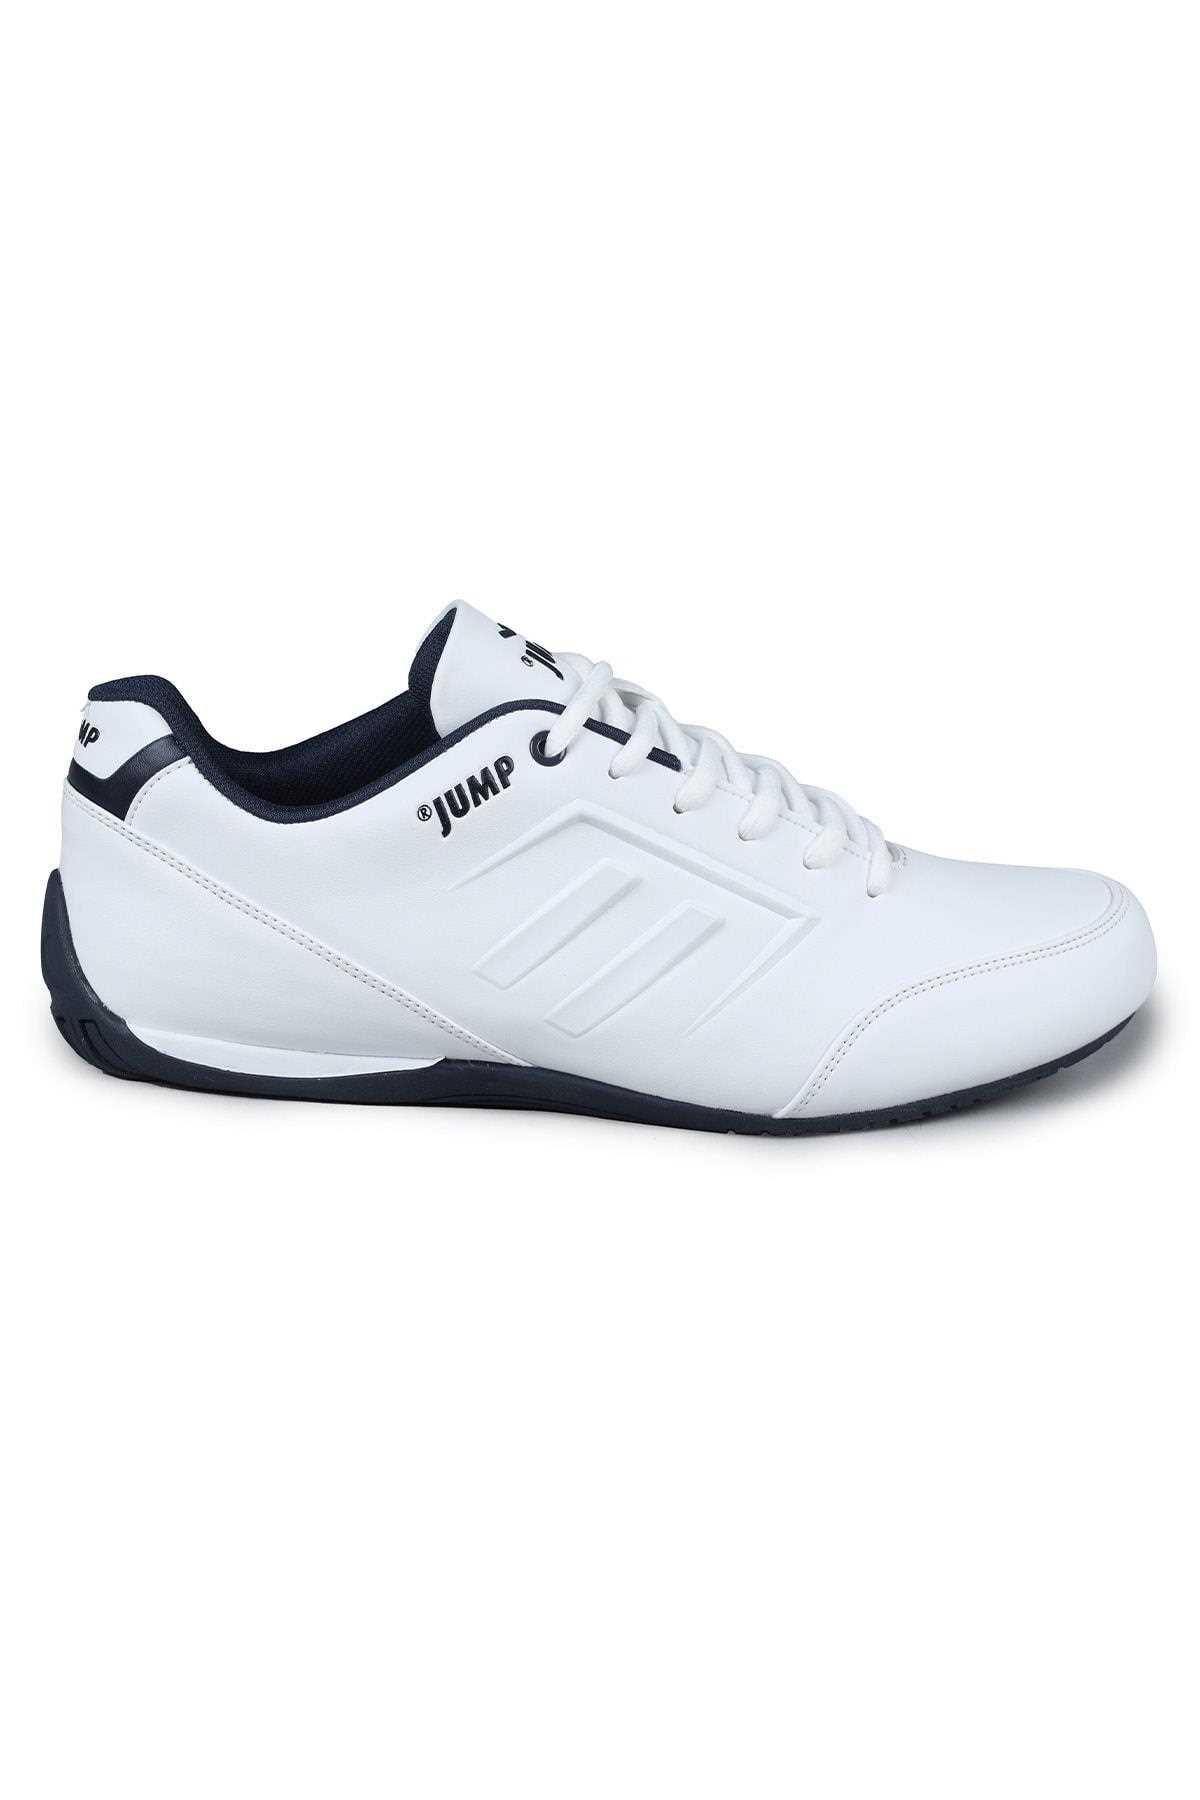 فروشگاه کفش مخصوص پیاده روی مردانه سال ۹۹ شیک جامپ رنگ سفید ty1844119